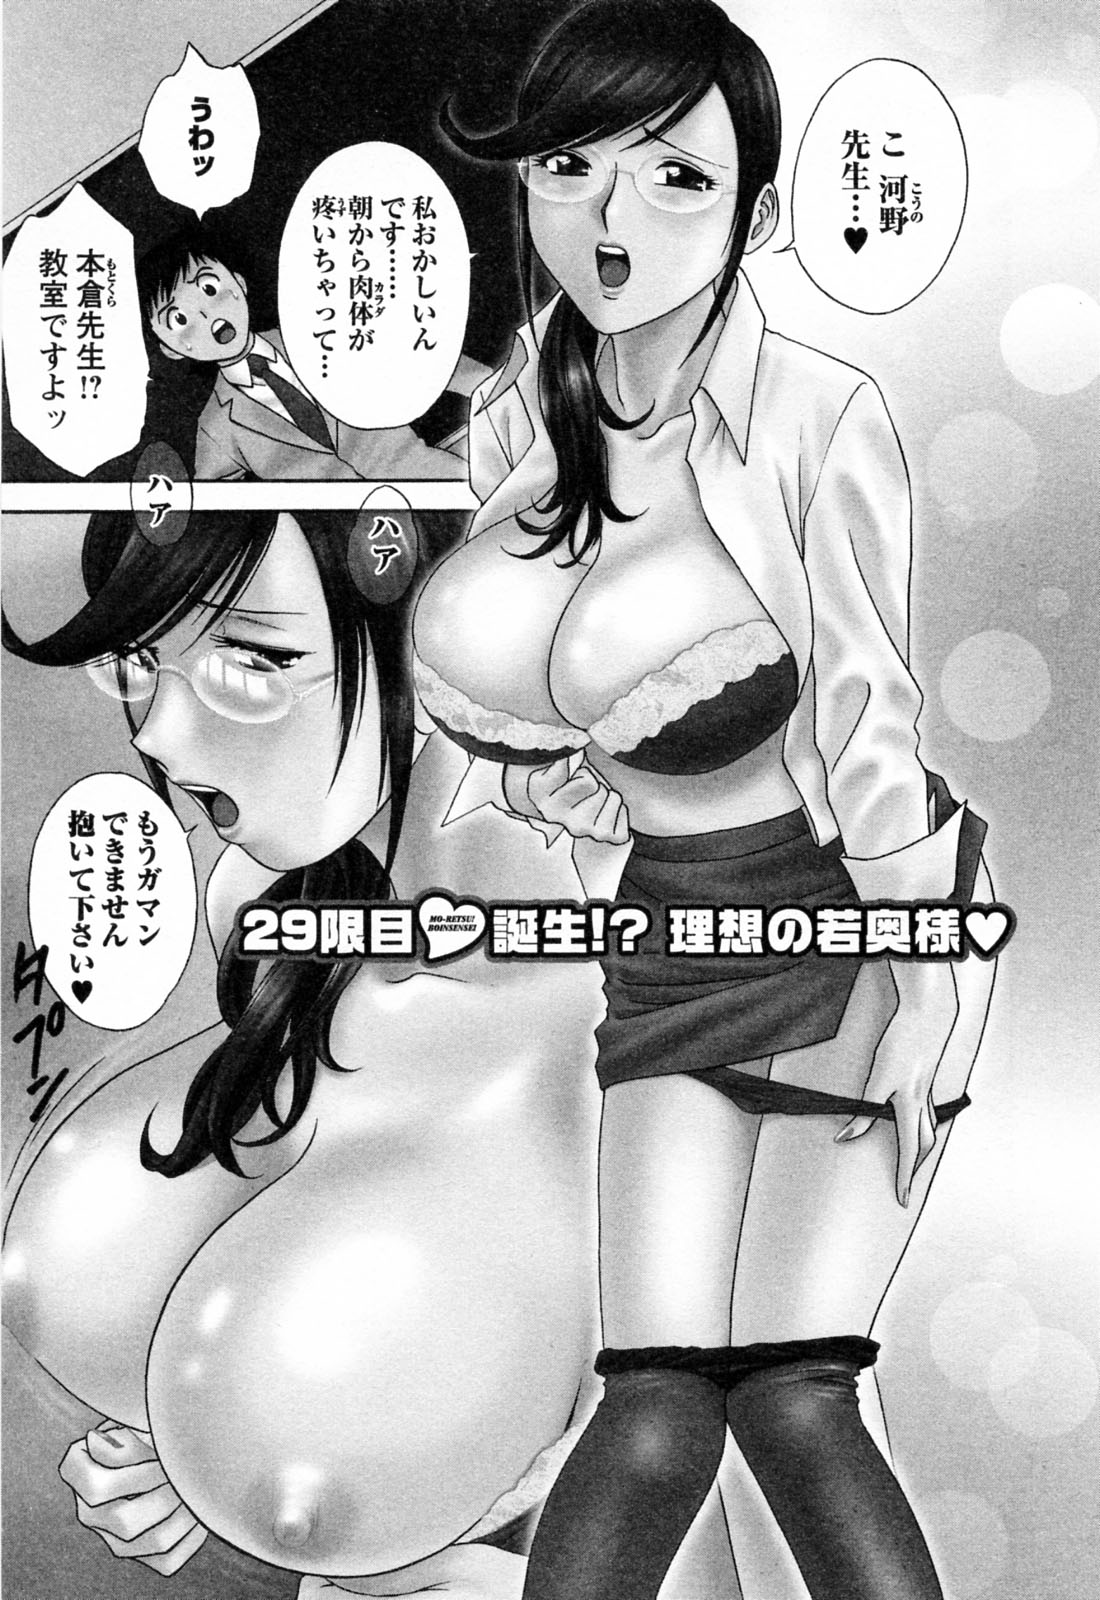 [Hidemaru] Mo-Retsu! Boin Sensei (Boing Boing Teacher) Vol.4 page 31 full